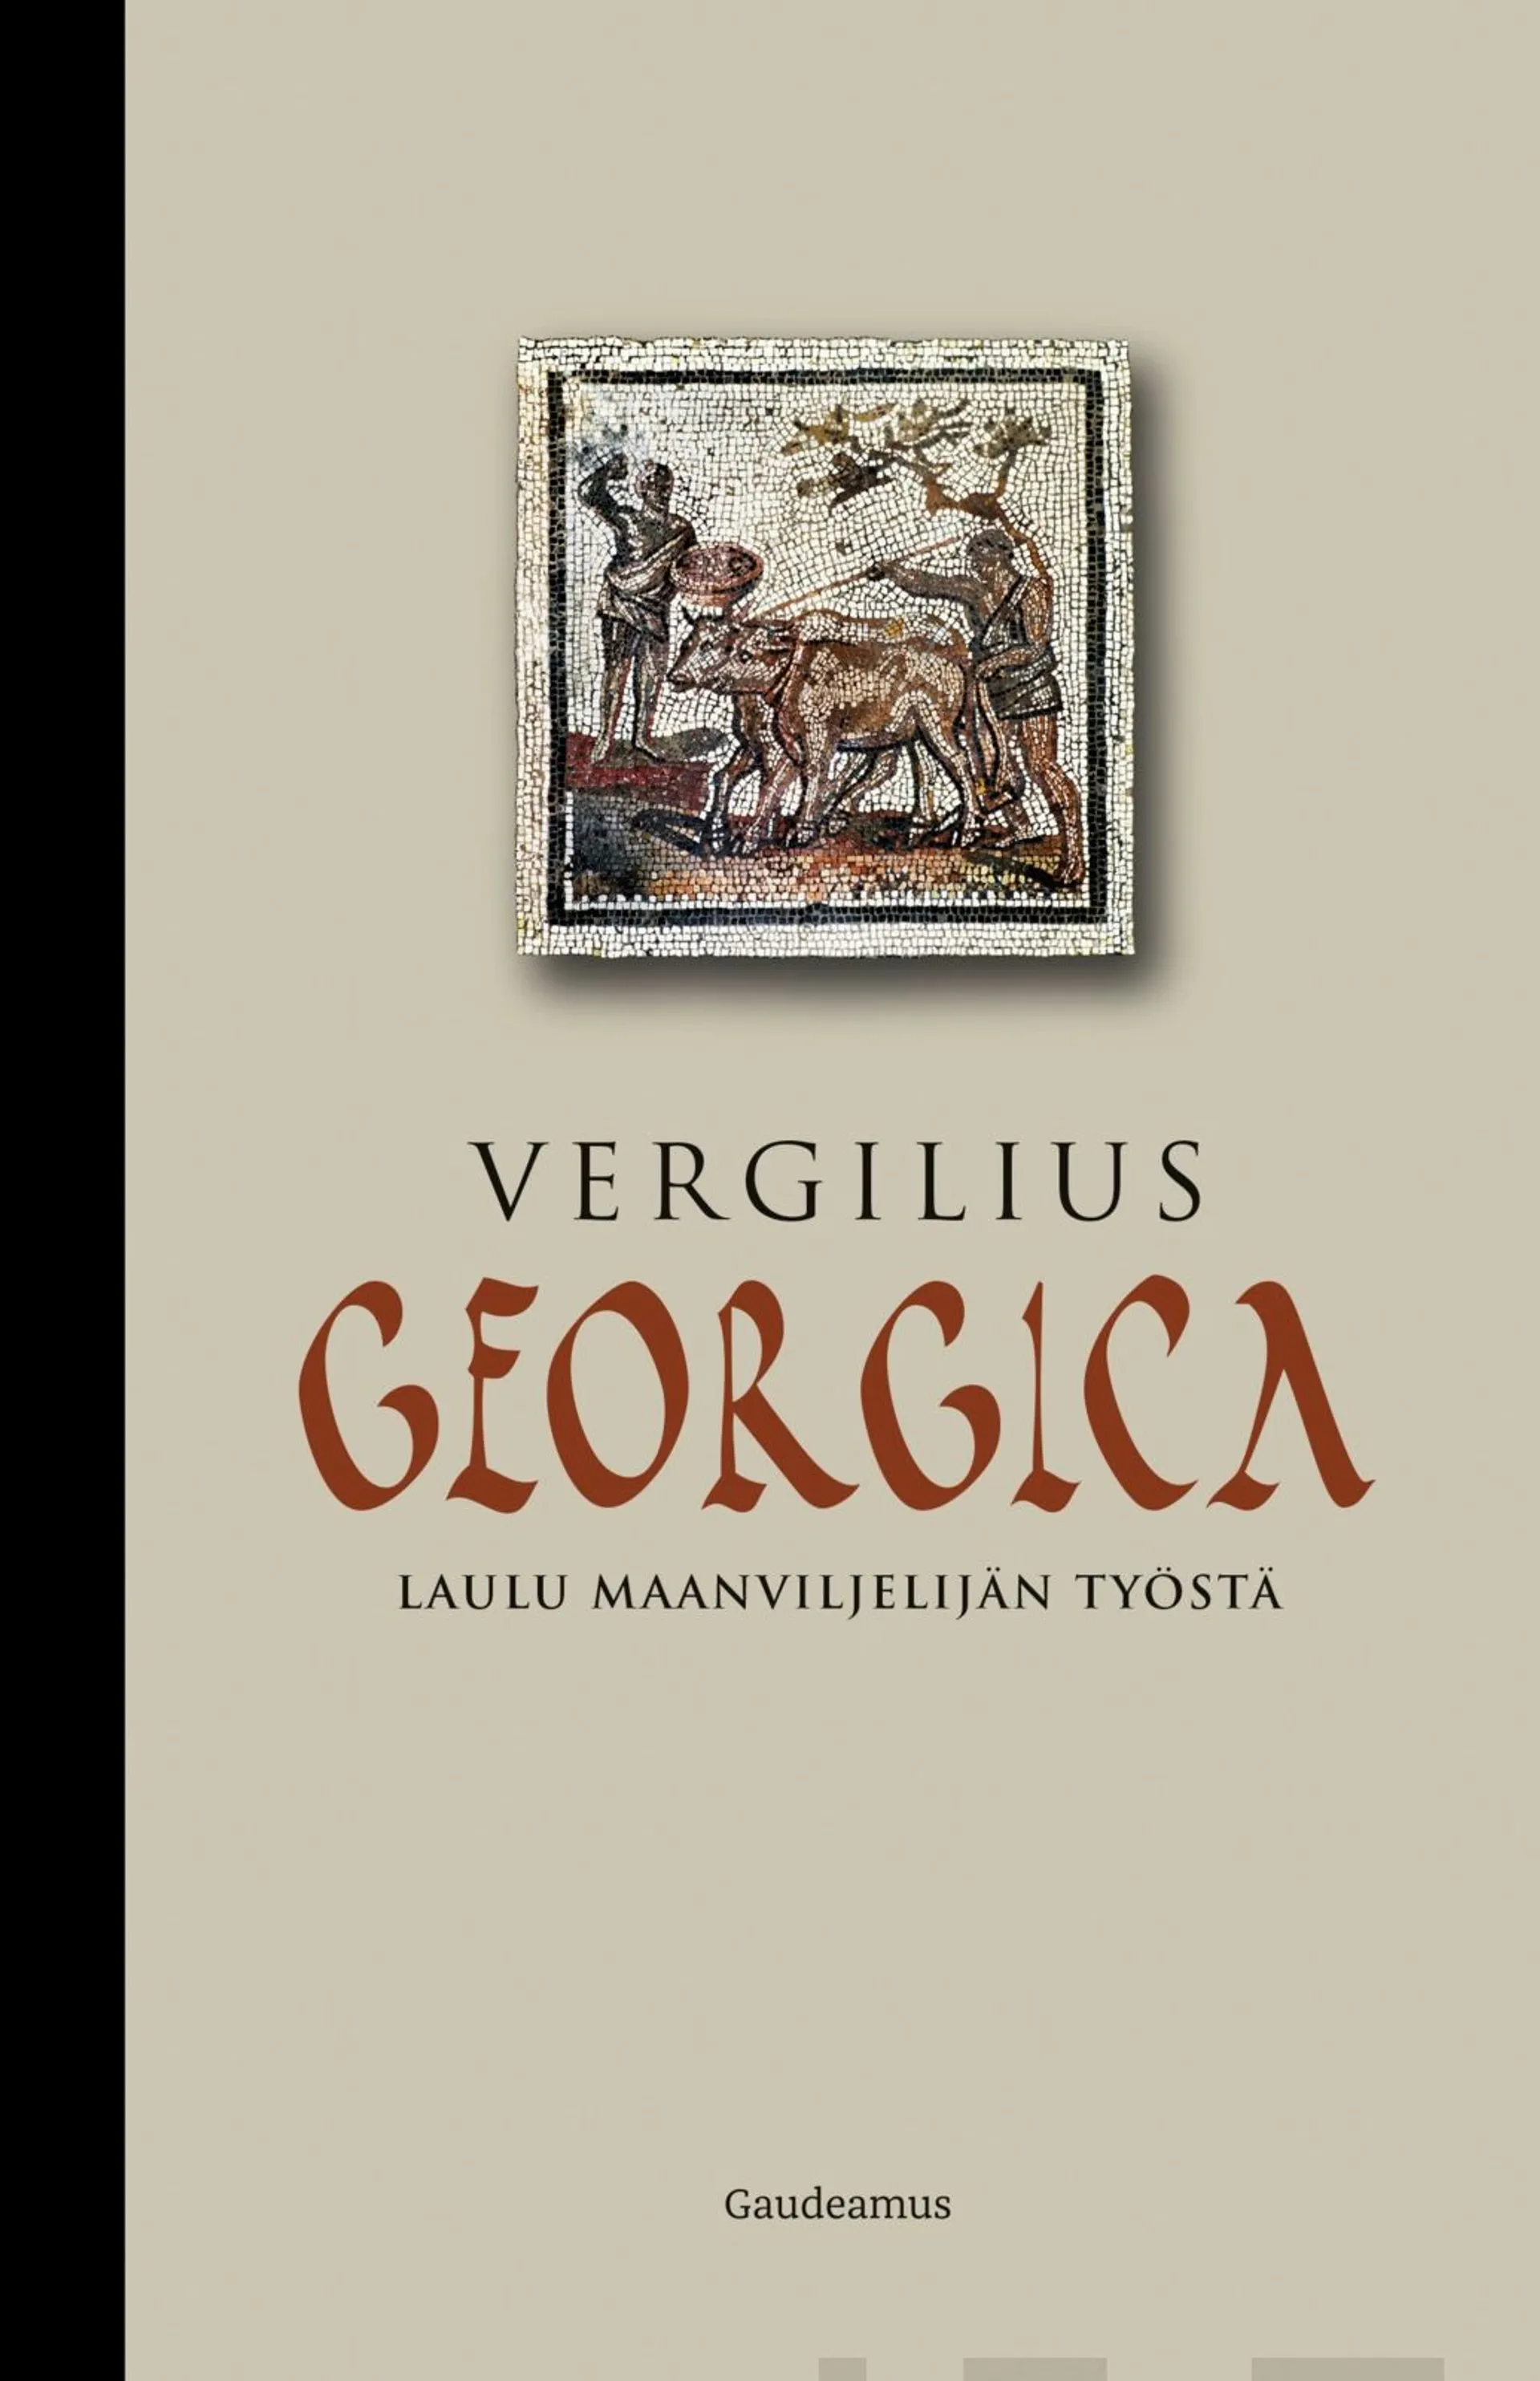 Vergilius, Georgica